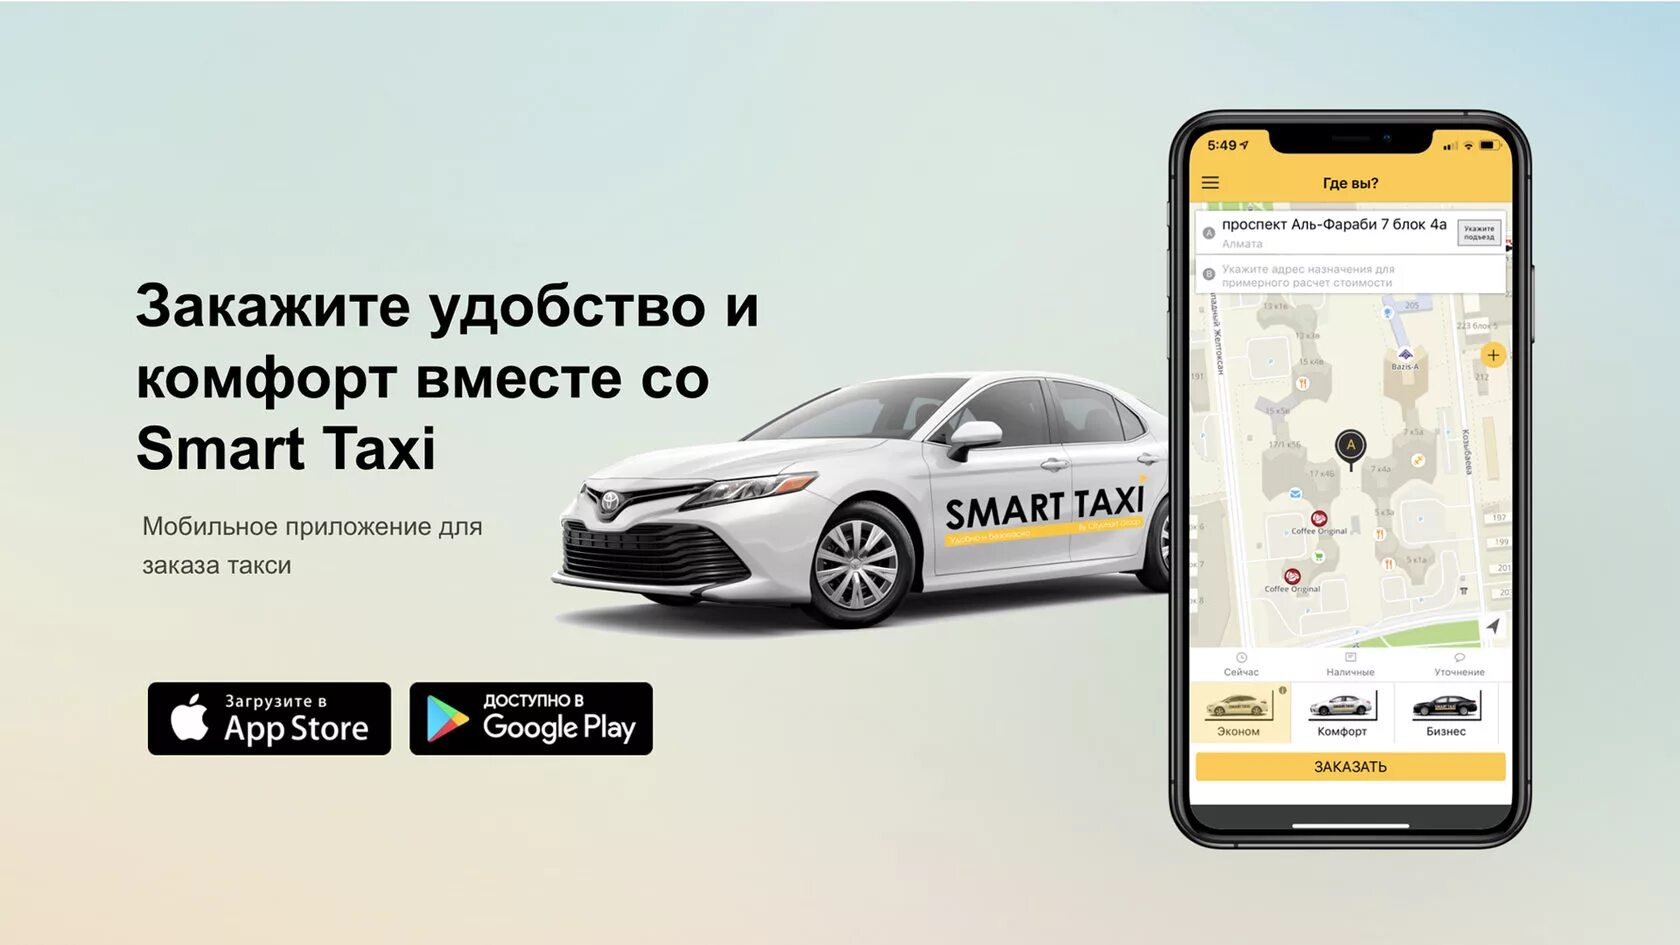 Предварительный заказ такси. Сервис заказа такси. Картинка предварительный заказ такси. Архитектура сервиса заказа такси.